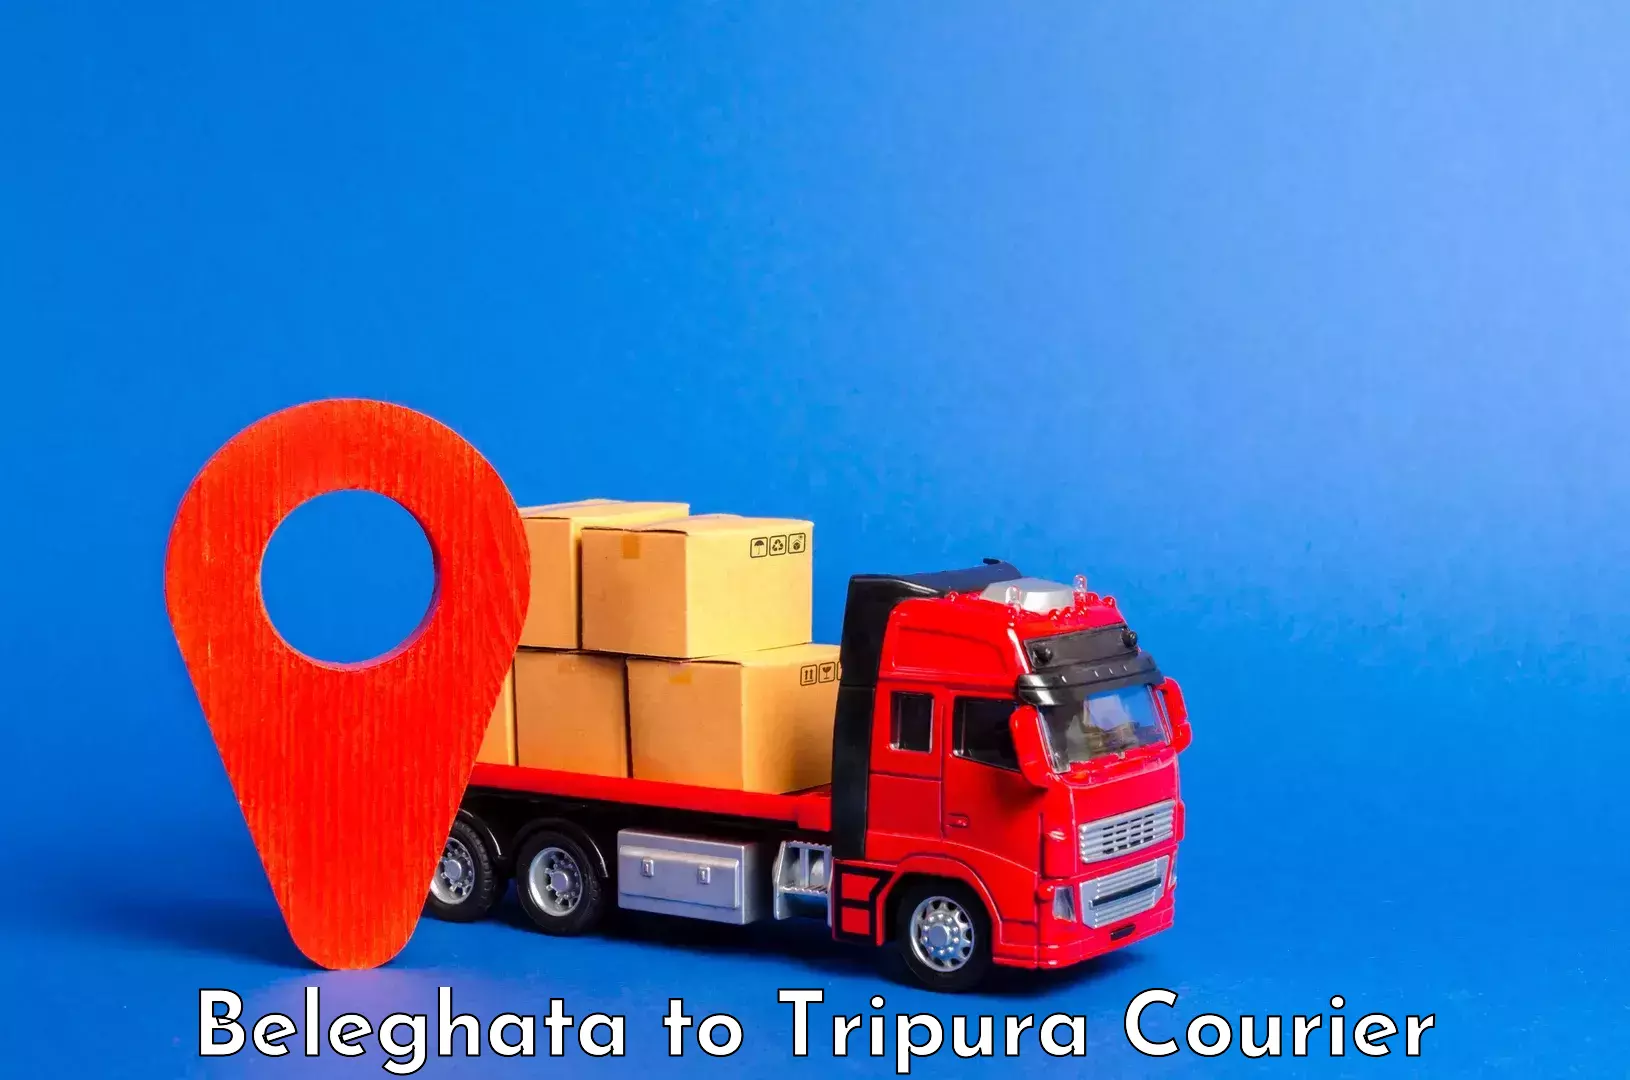 Urgent luggage shipment in Beleghata to Udaipur Tripura